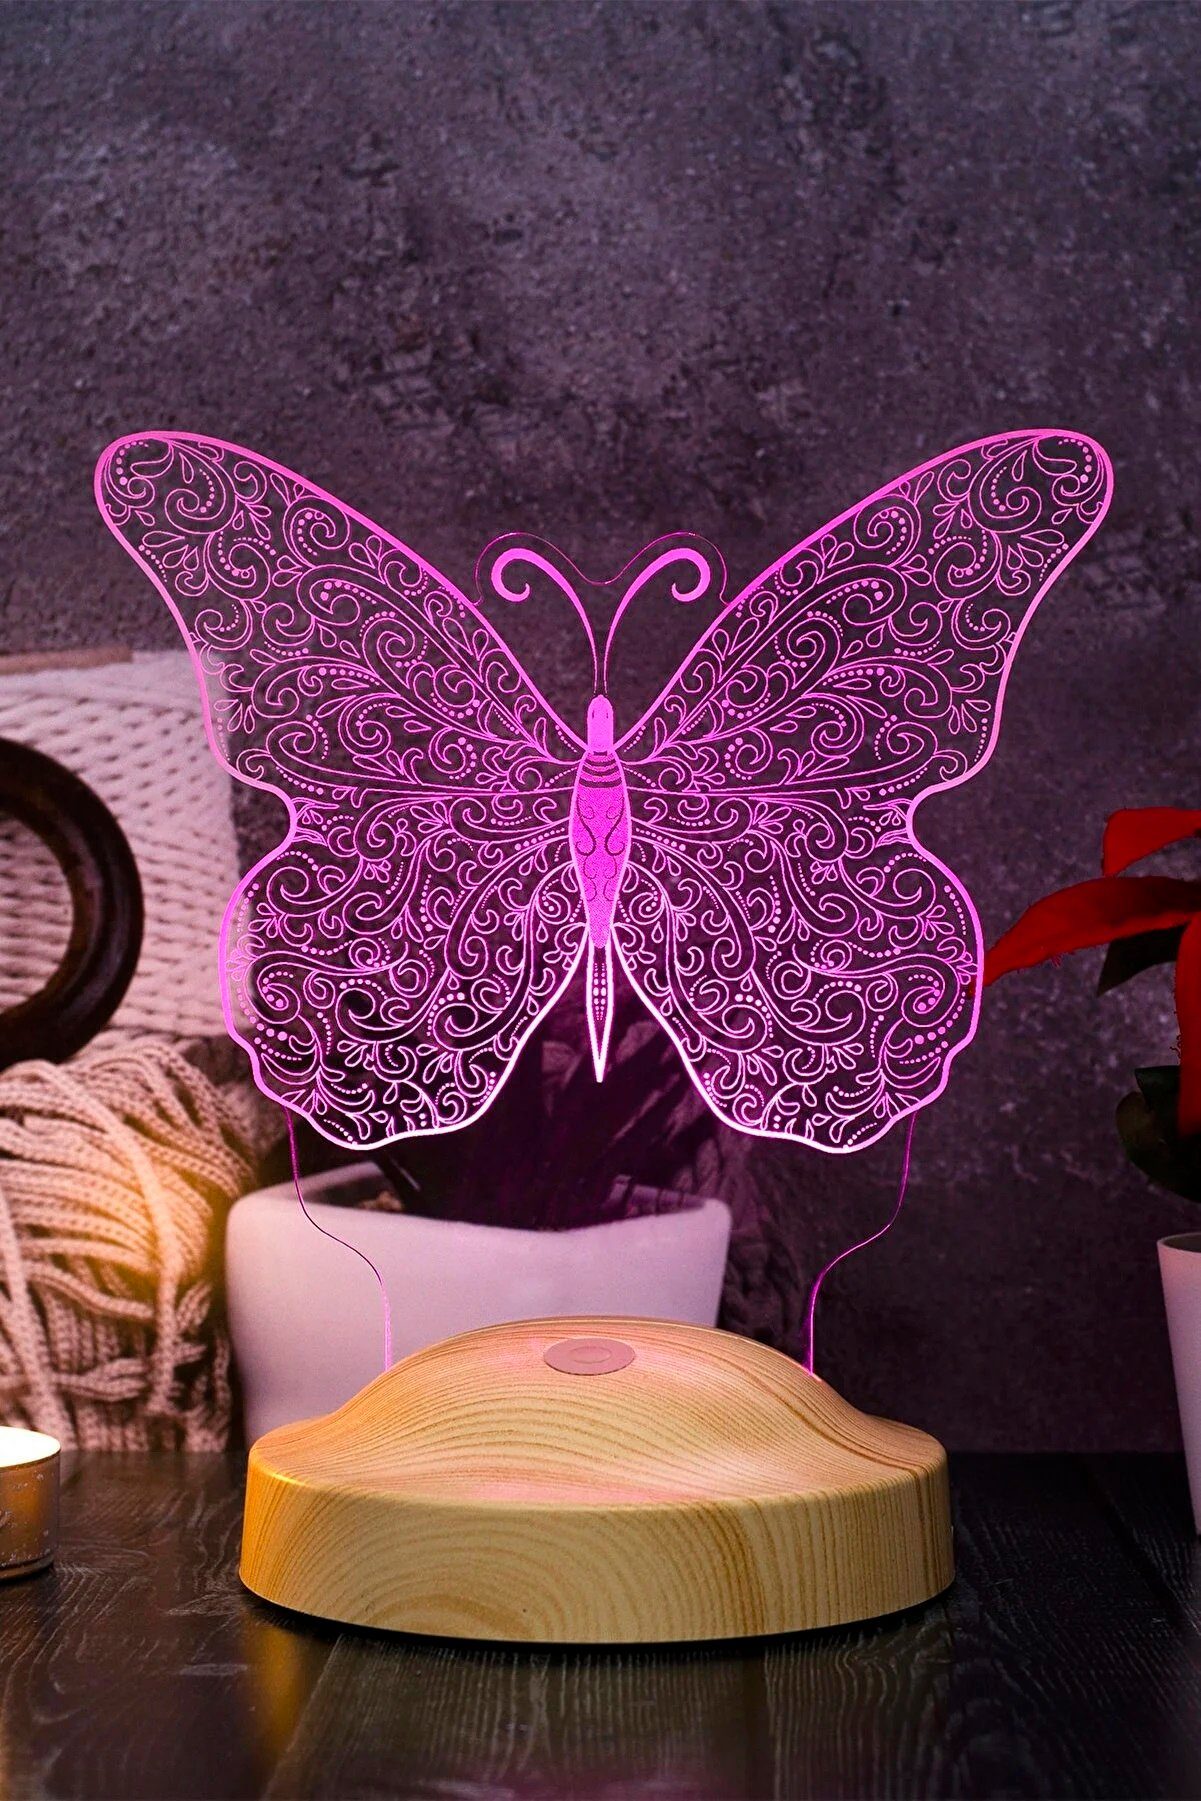 fest 3D Leuchte Weihnachtsgeschenk Nachttischlampe Schmetterling für Nachtlicht Butterfly Geschenkelampe integriert, Tochter, Geburtstagsgeschenk, LED Gravur 7 Mädchen Farben Enkelin,